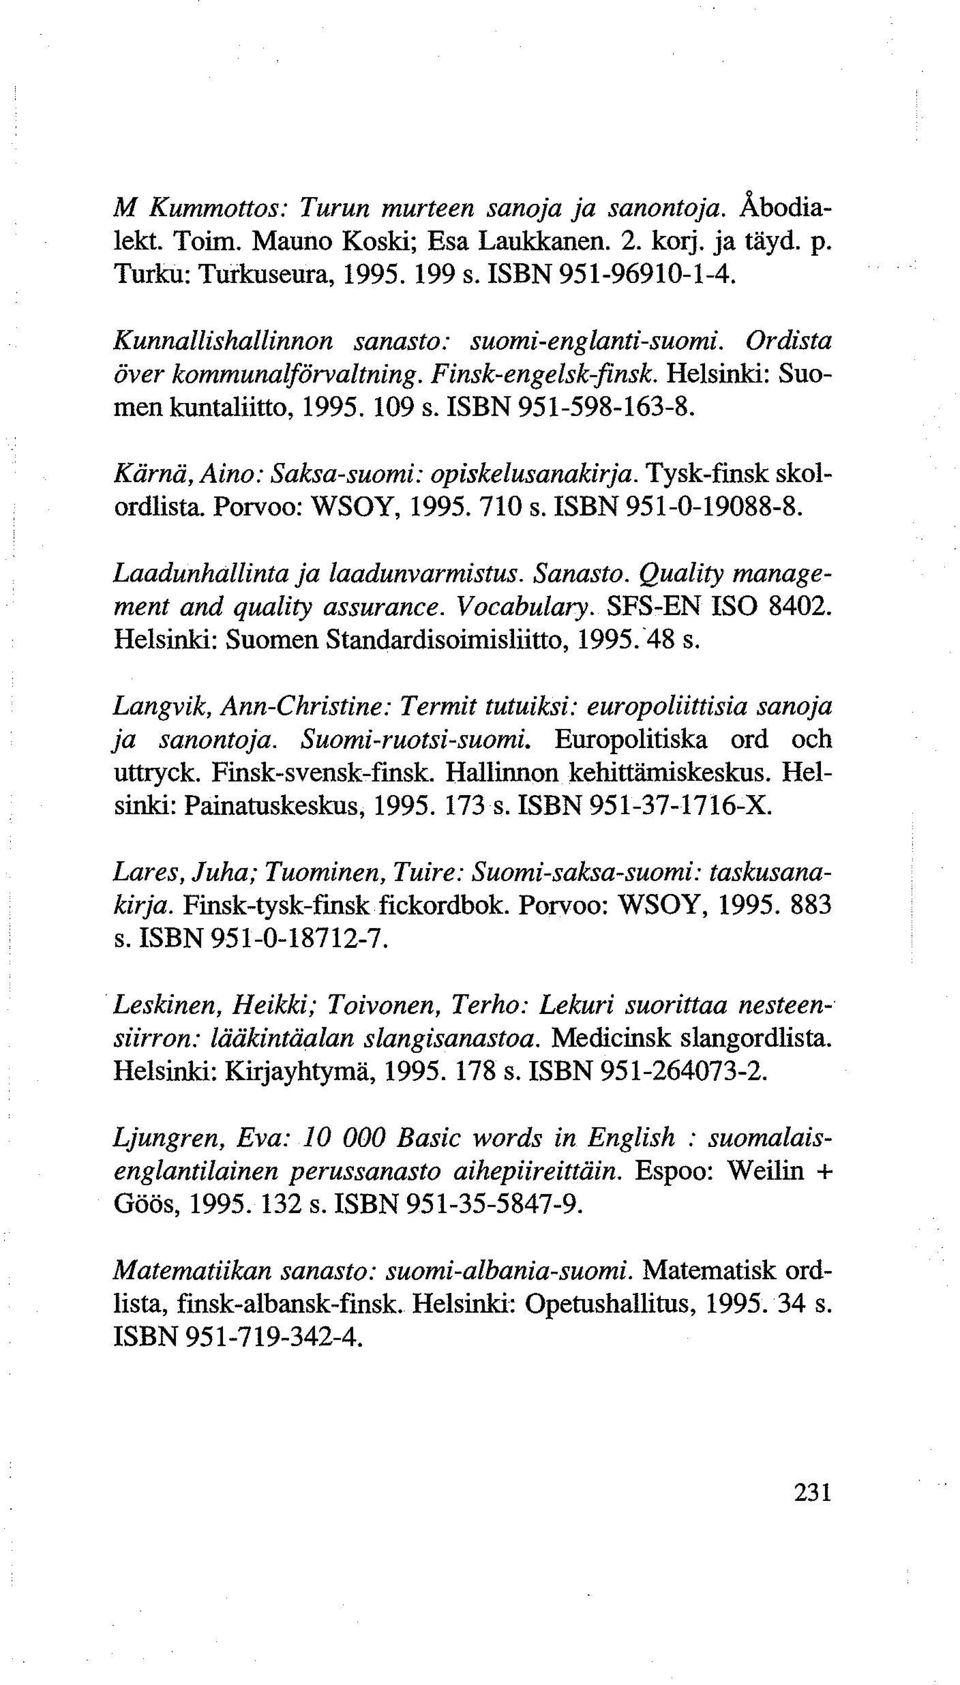 Kiirnii, Aino: Saksa-suomi: opiskelusanakirja. Tysk-finsk skolordlista. Porvoo: WSOY, 1995. 710 s. ISBN 951-0-19088-8. Laadunhallinta ja laadunvarmistus. Sanasto.